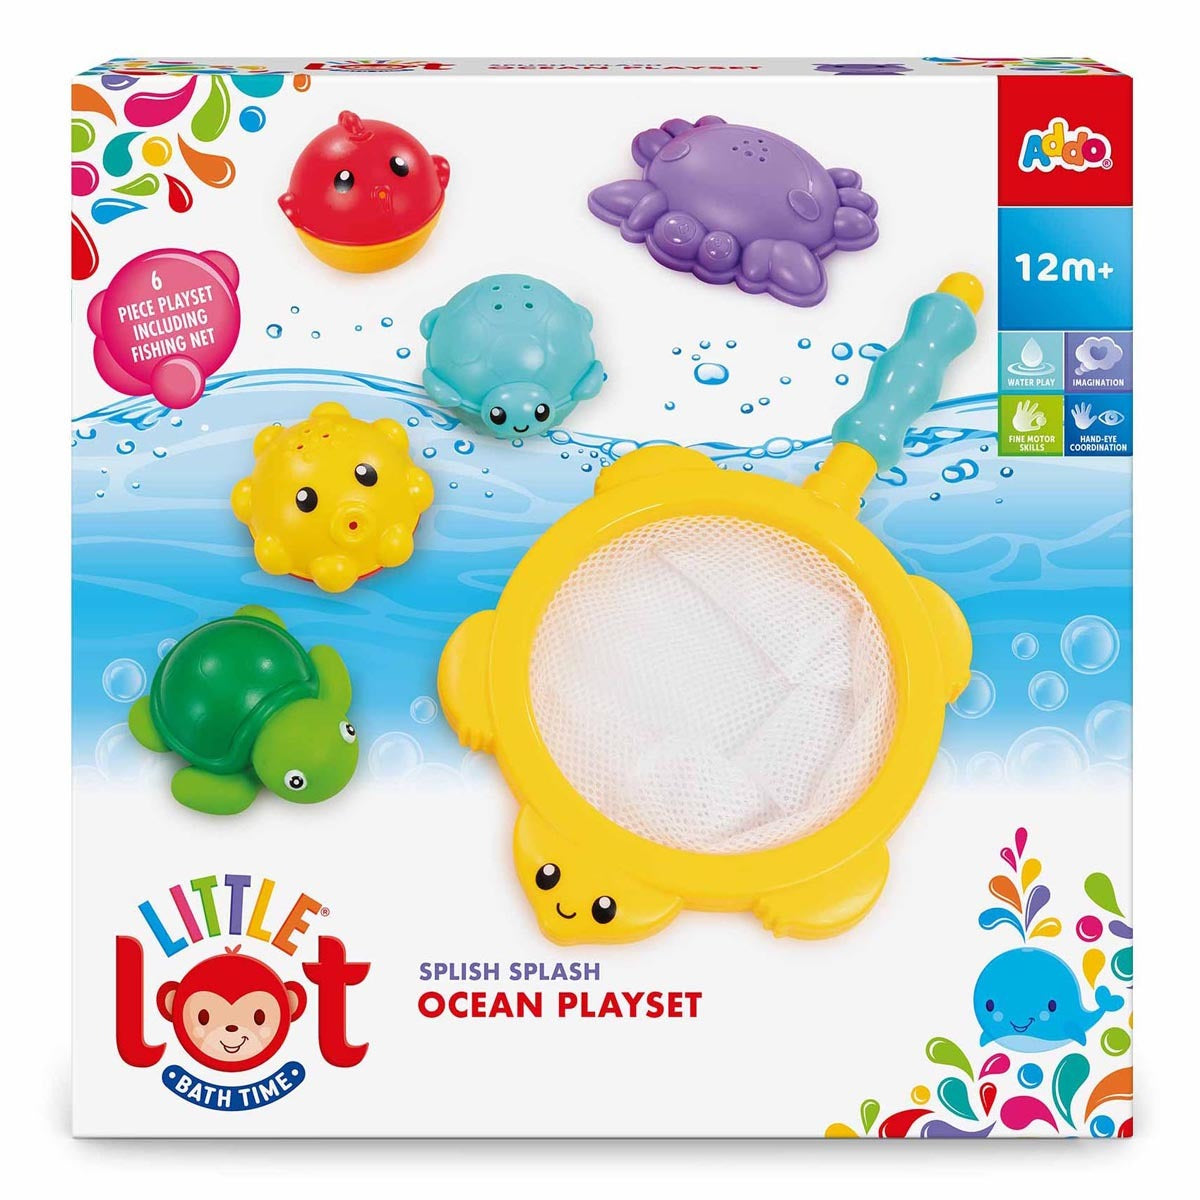 Little Lot Bathtime Splish Splash Ocean Playset